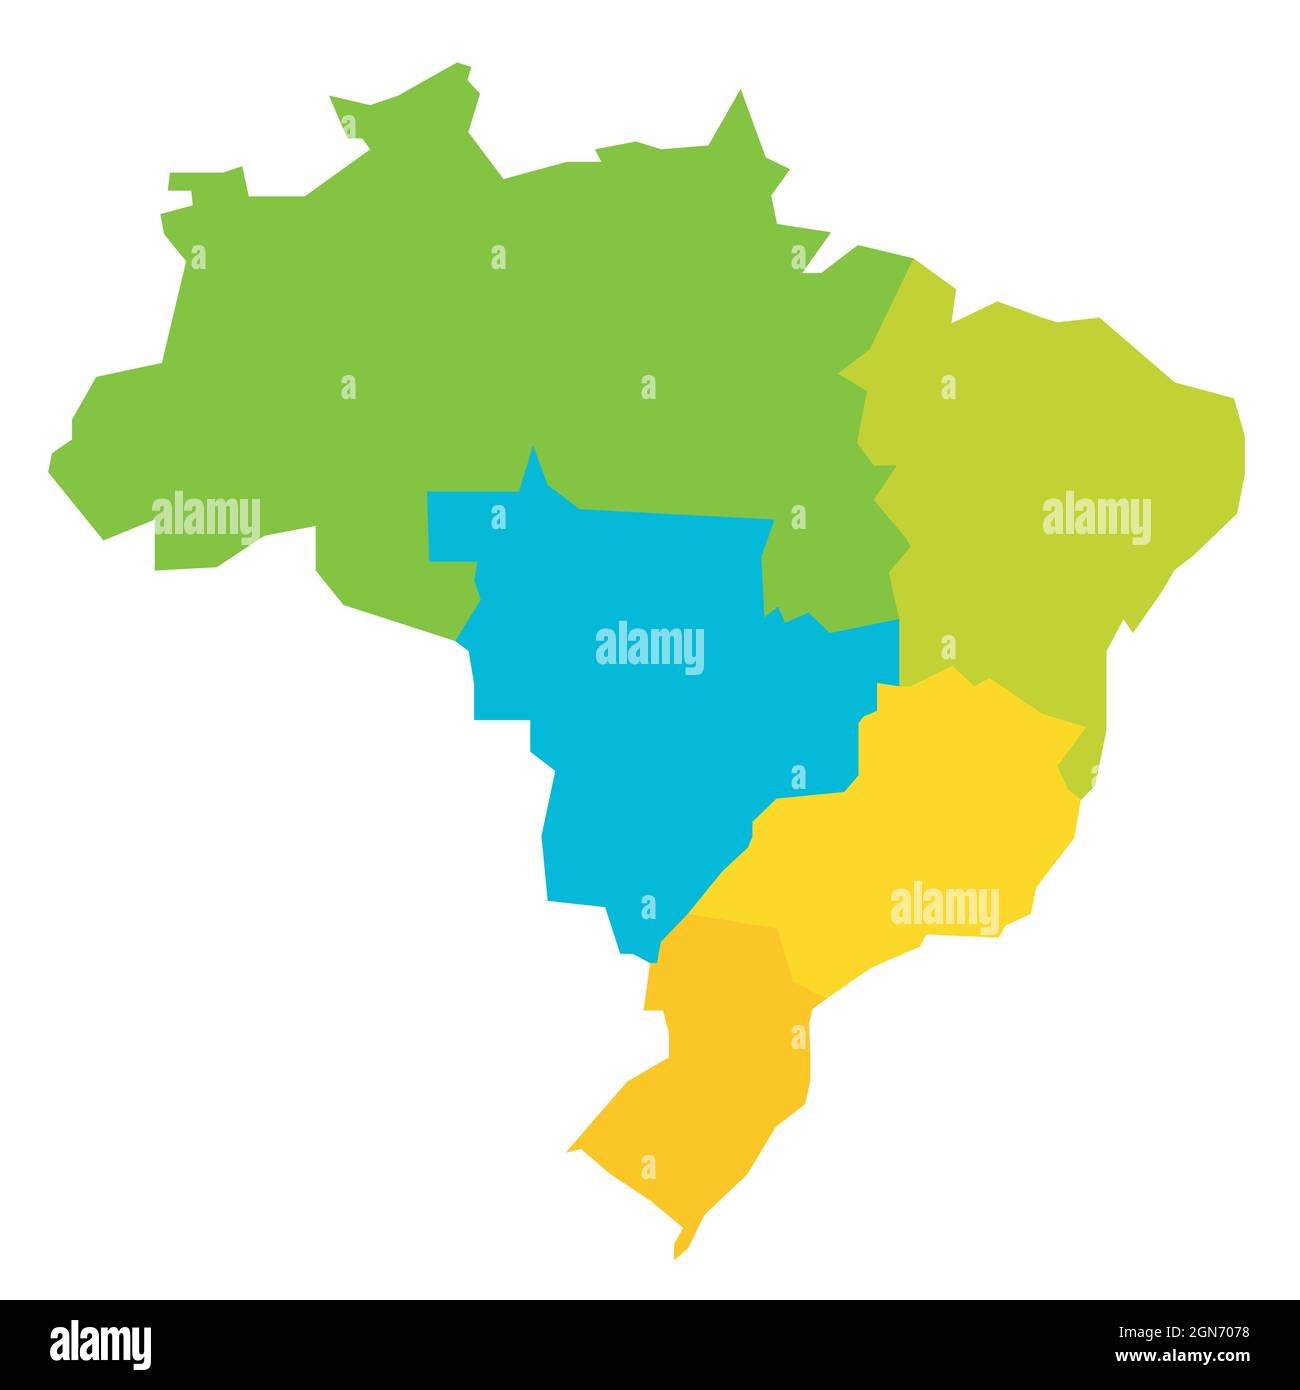 Bunte politische Landkarte von Brasilien. Staaten teilen sich nach Farbe in 5 Regionen auf. Einfache, flache, leere Vektorkarte Stock Vektor